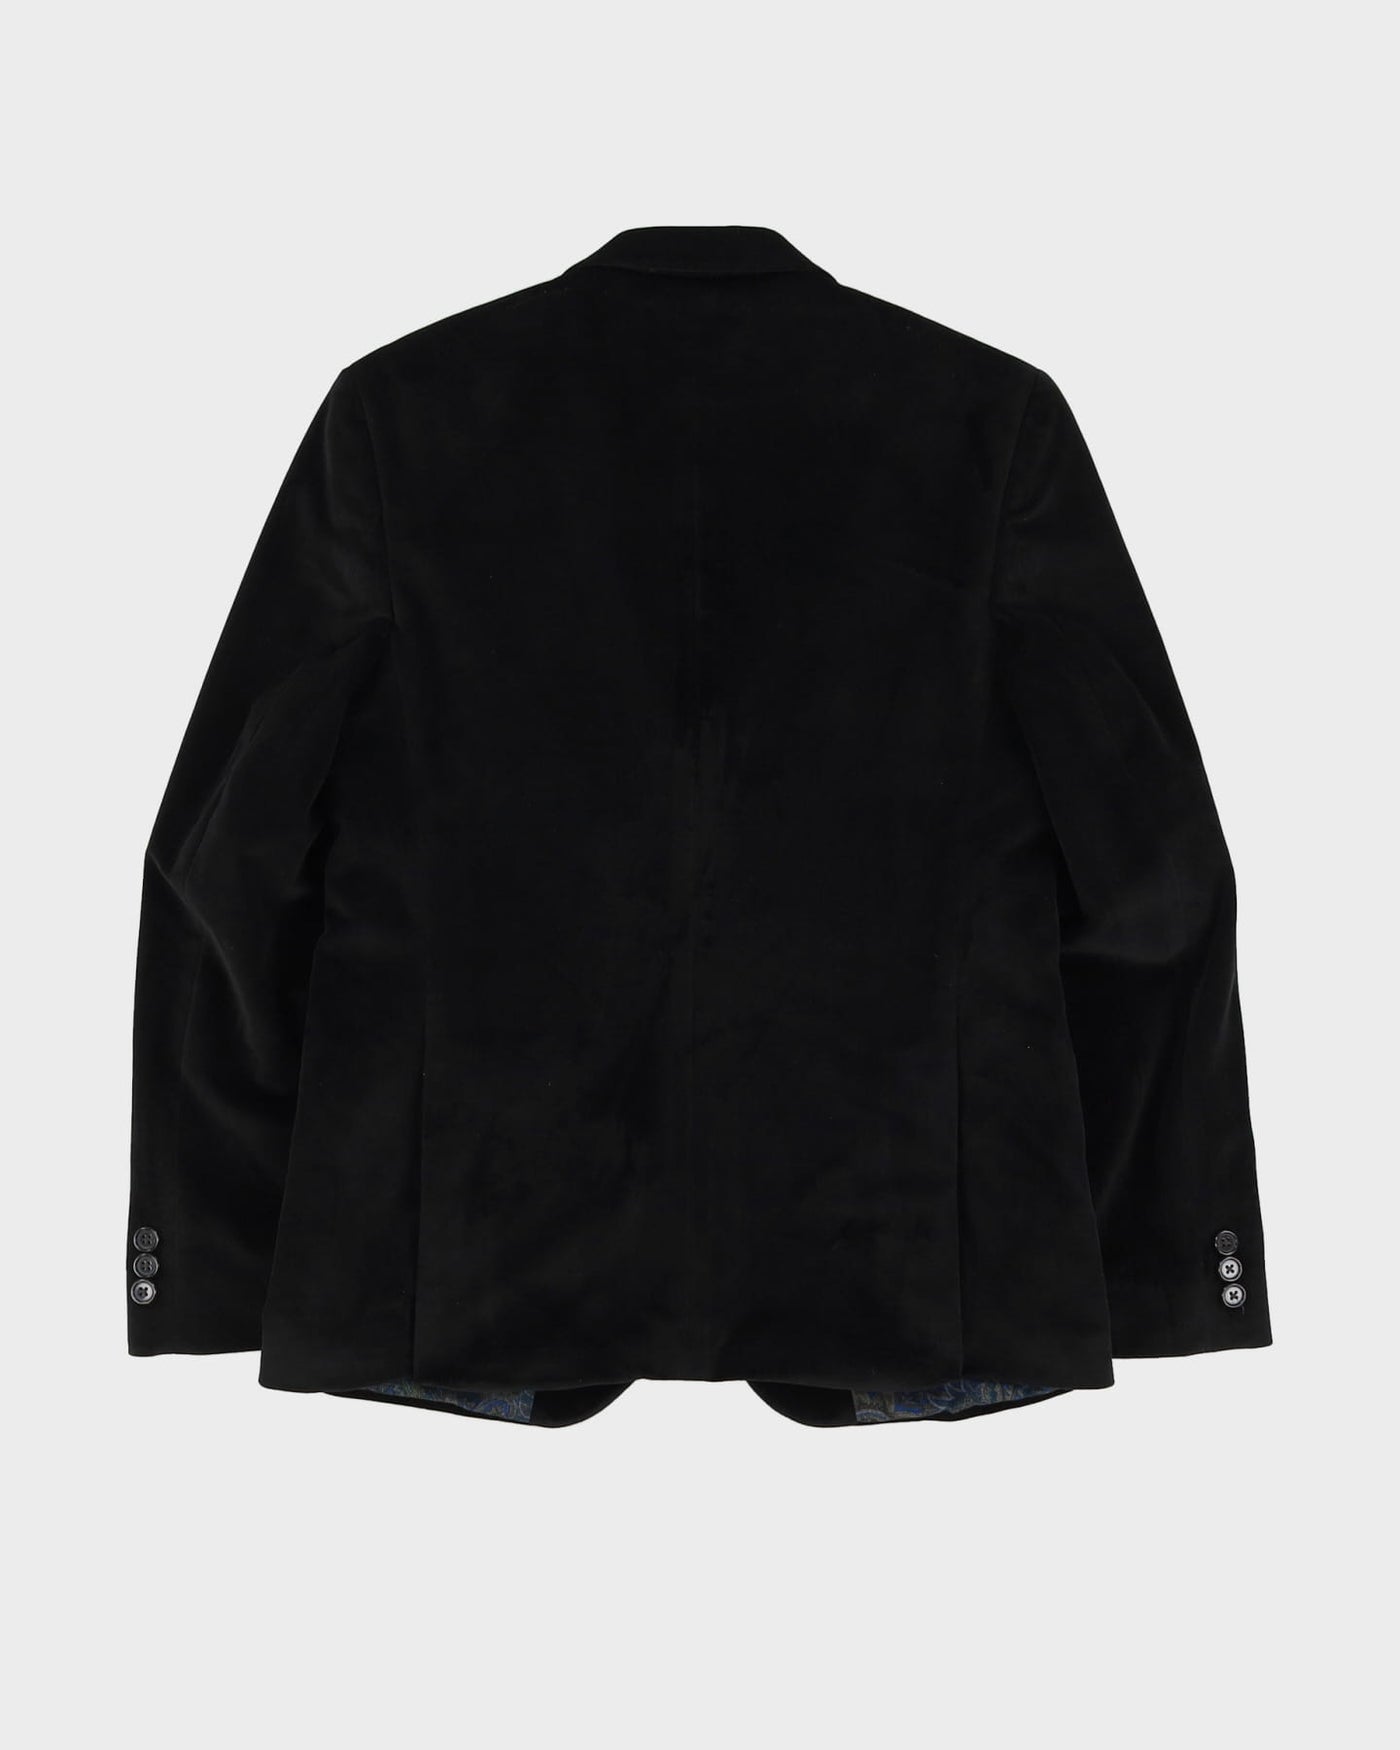 Lauren Ralph Lauren Black Velvet Blazer Jacket - S